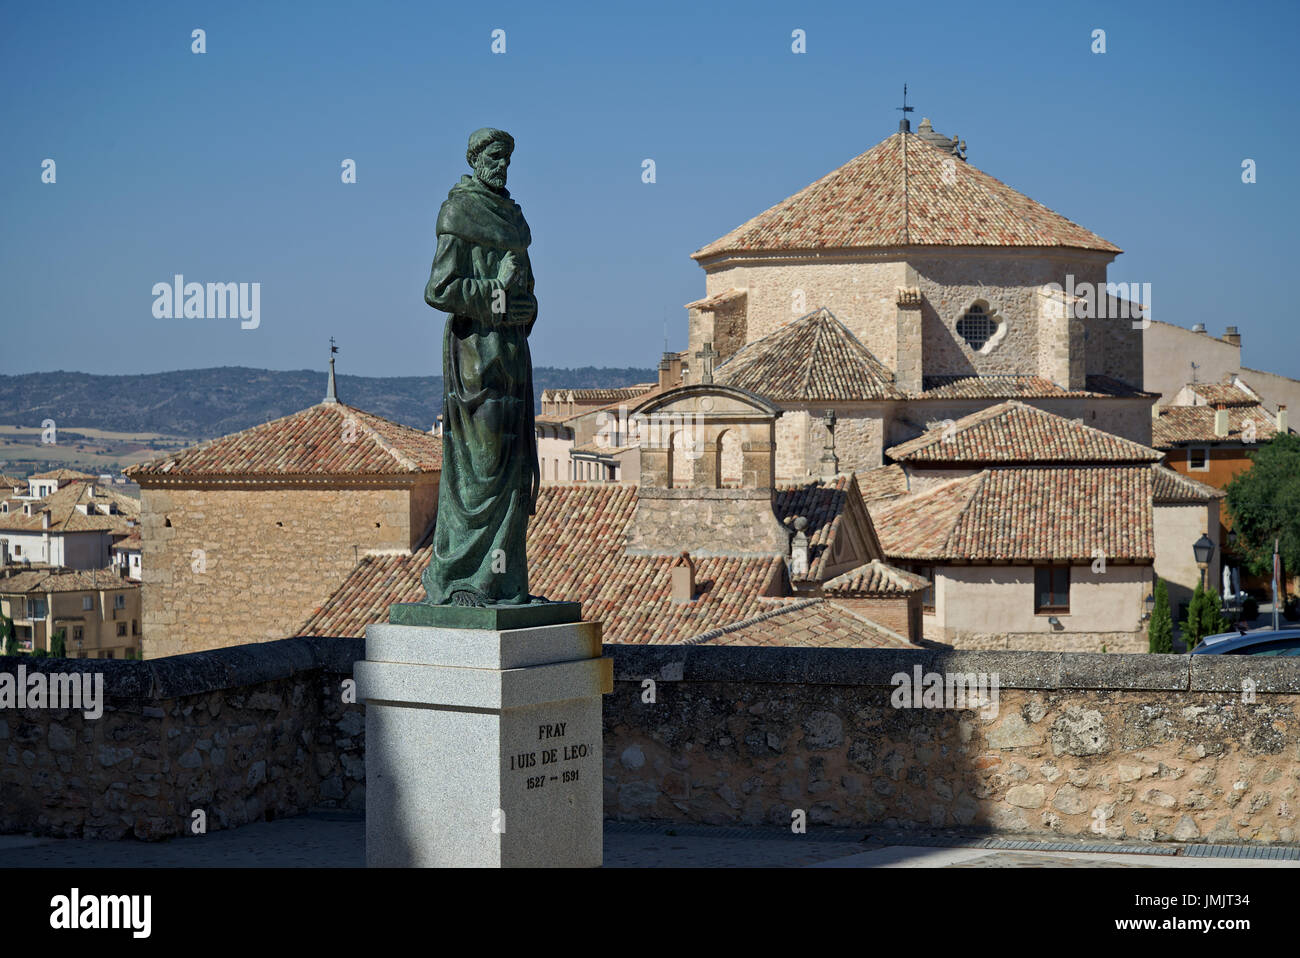 Estatua de Fray Luis de León realizada en bronce por el escultor Javier barrios con la iglesia de San Pedro en el fondo. Cuenca, Castilla La Mancha, España. Foto de stock